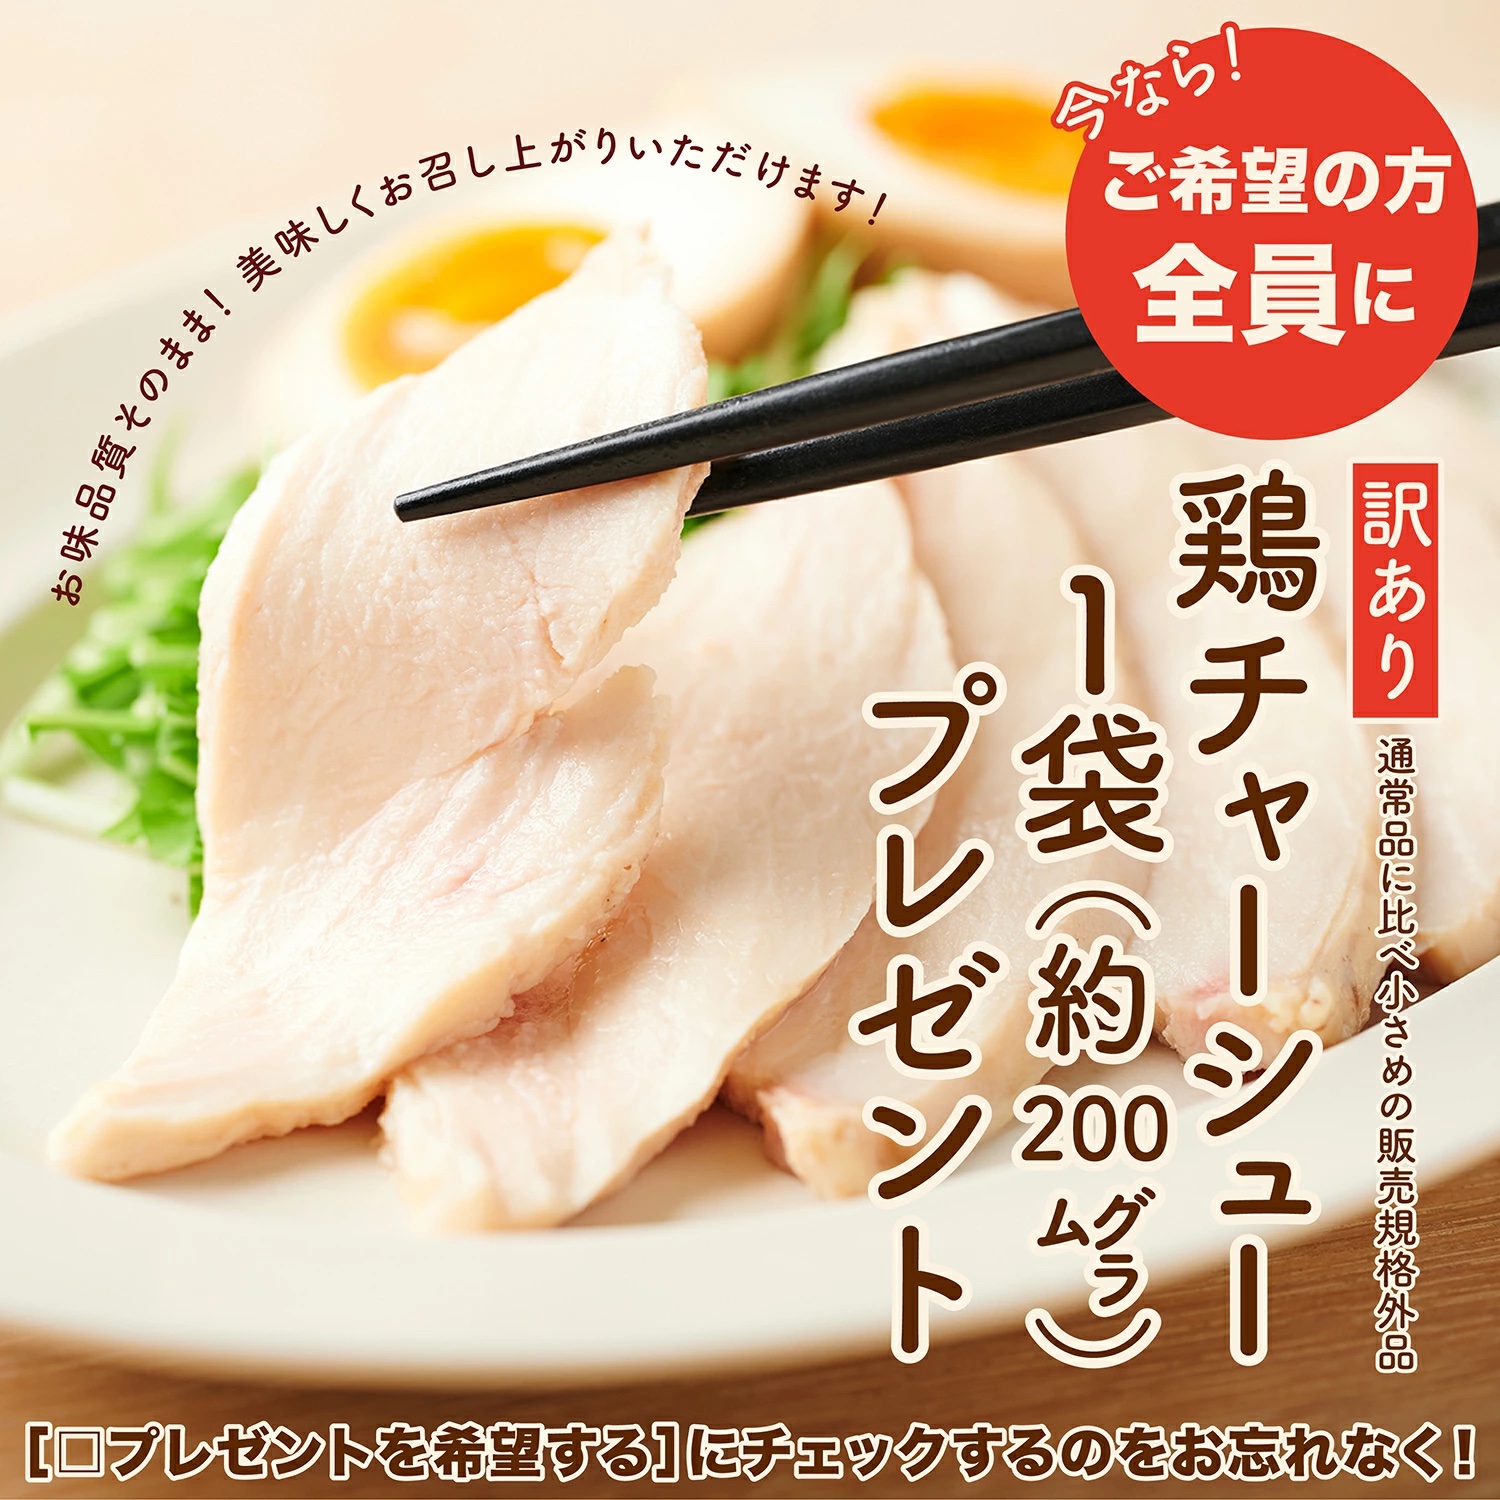 鶏チャーシュープレゼント ラーメン AFURI公式 柚子塩らーめん 3食入り 取り寄せ セット ラーメンの具 具材付き 冷凍食品 麺類 名店 ギフト  ラーメン